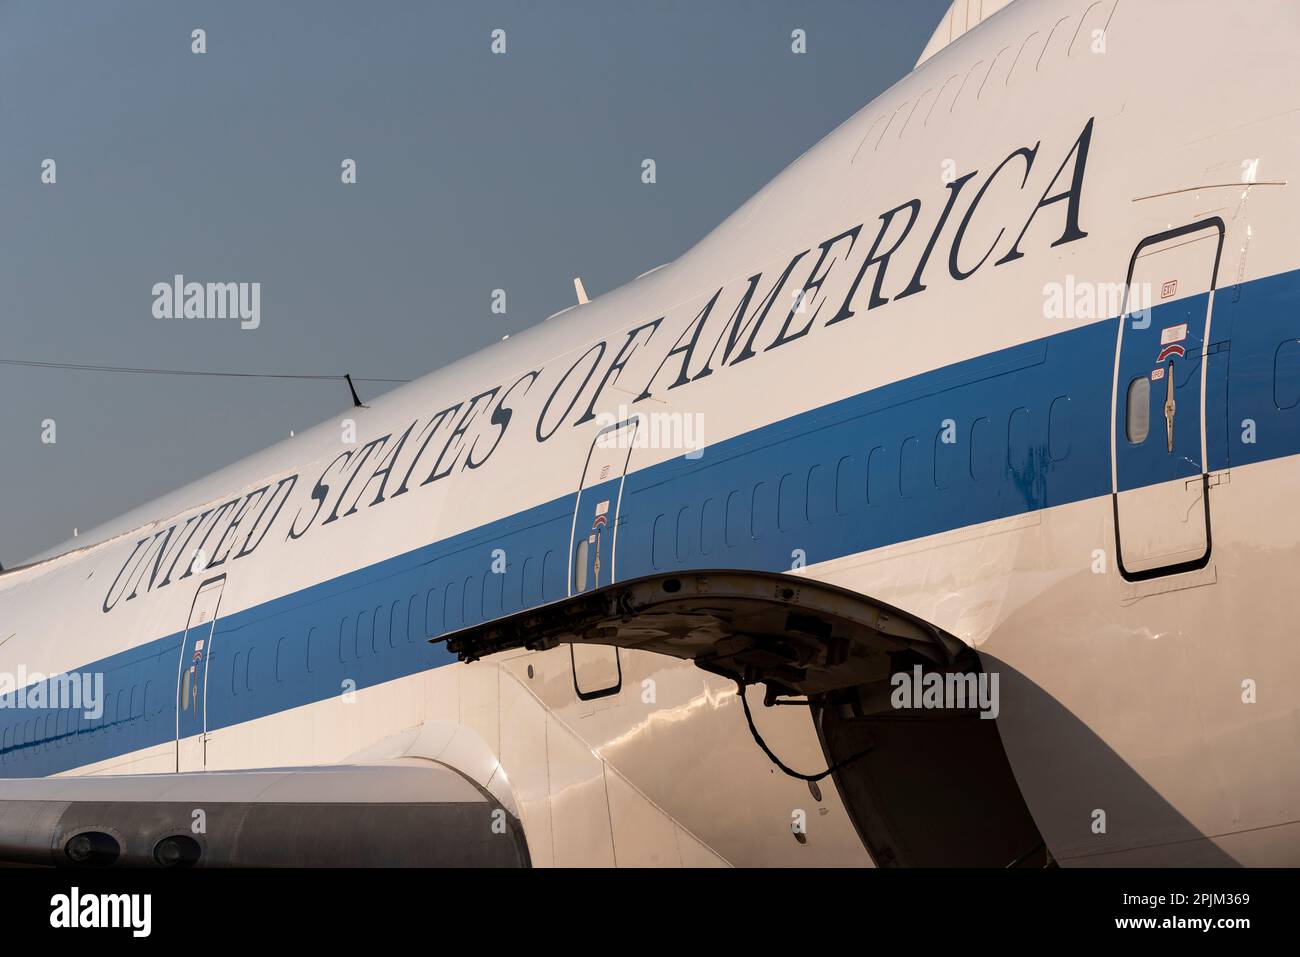 Stati Uniti d'America, testo a fianco del Boeing e-4B dell'aeronautica militare avanzata, soprannominato Doomsday plane. Posto di comando presidenziale Foto Stock